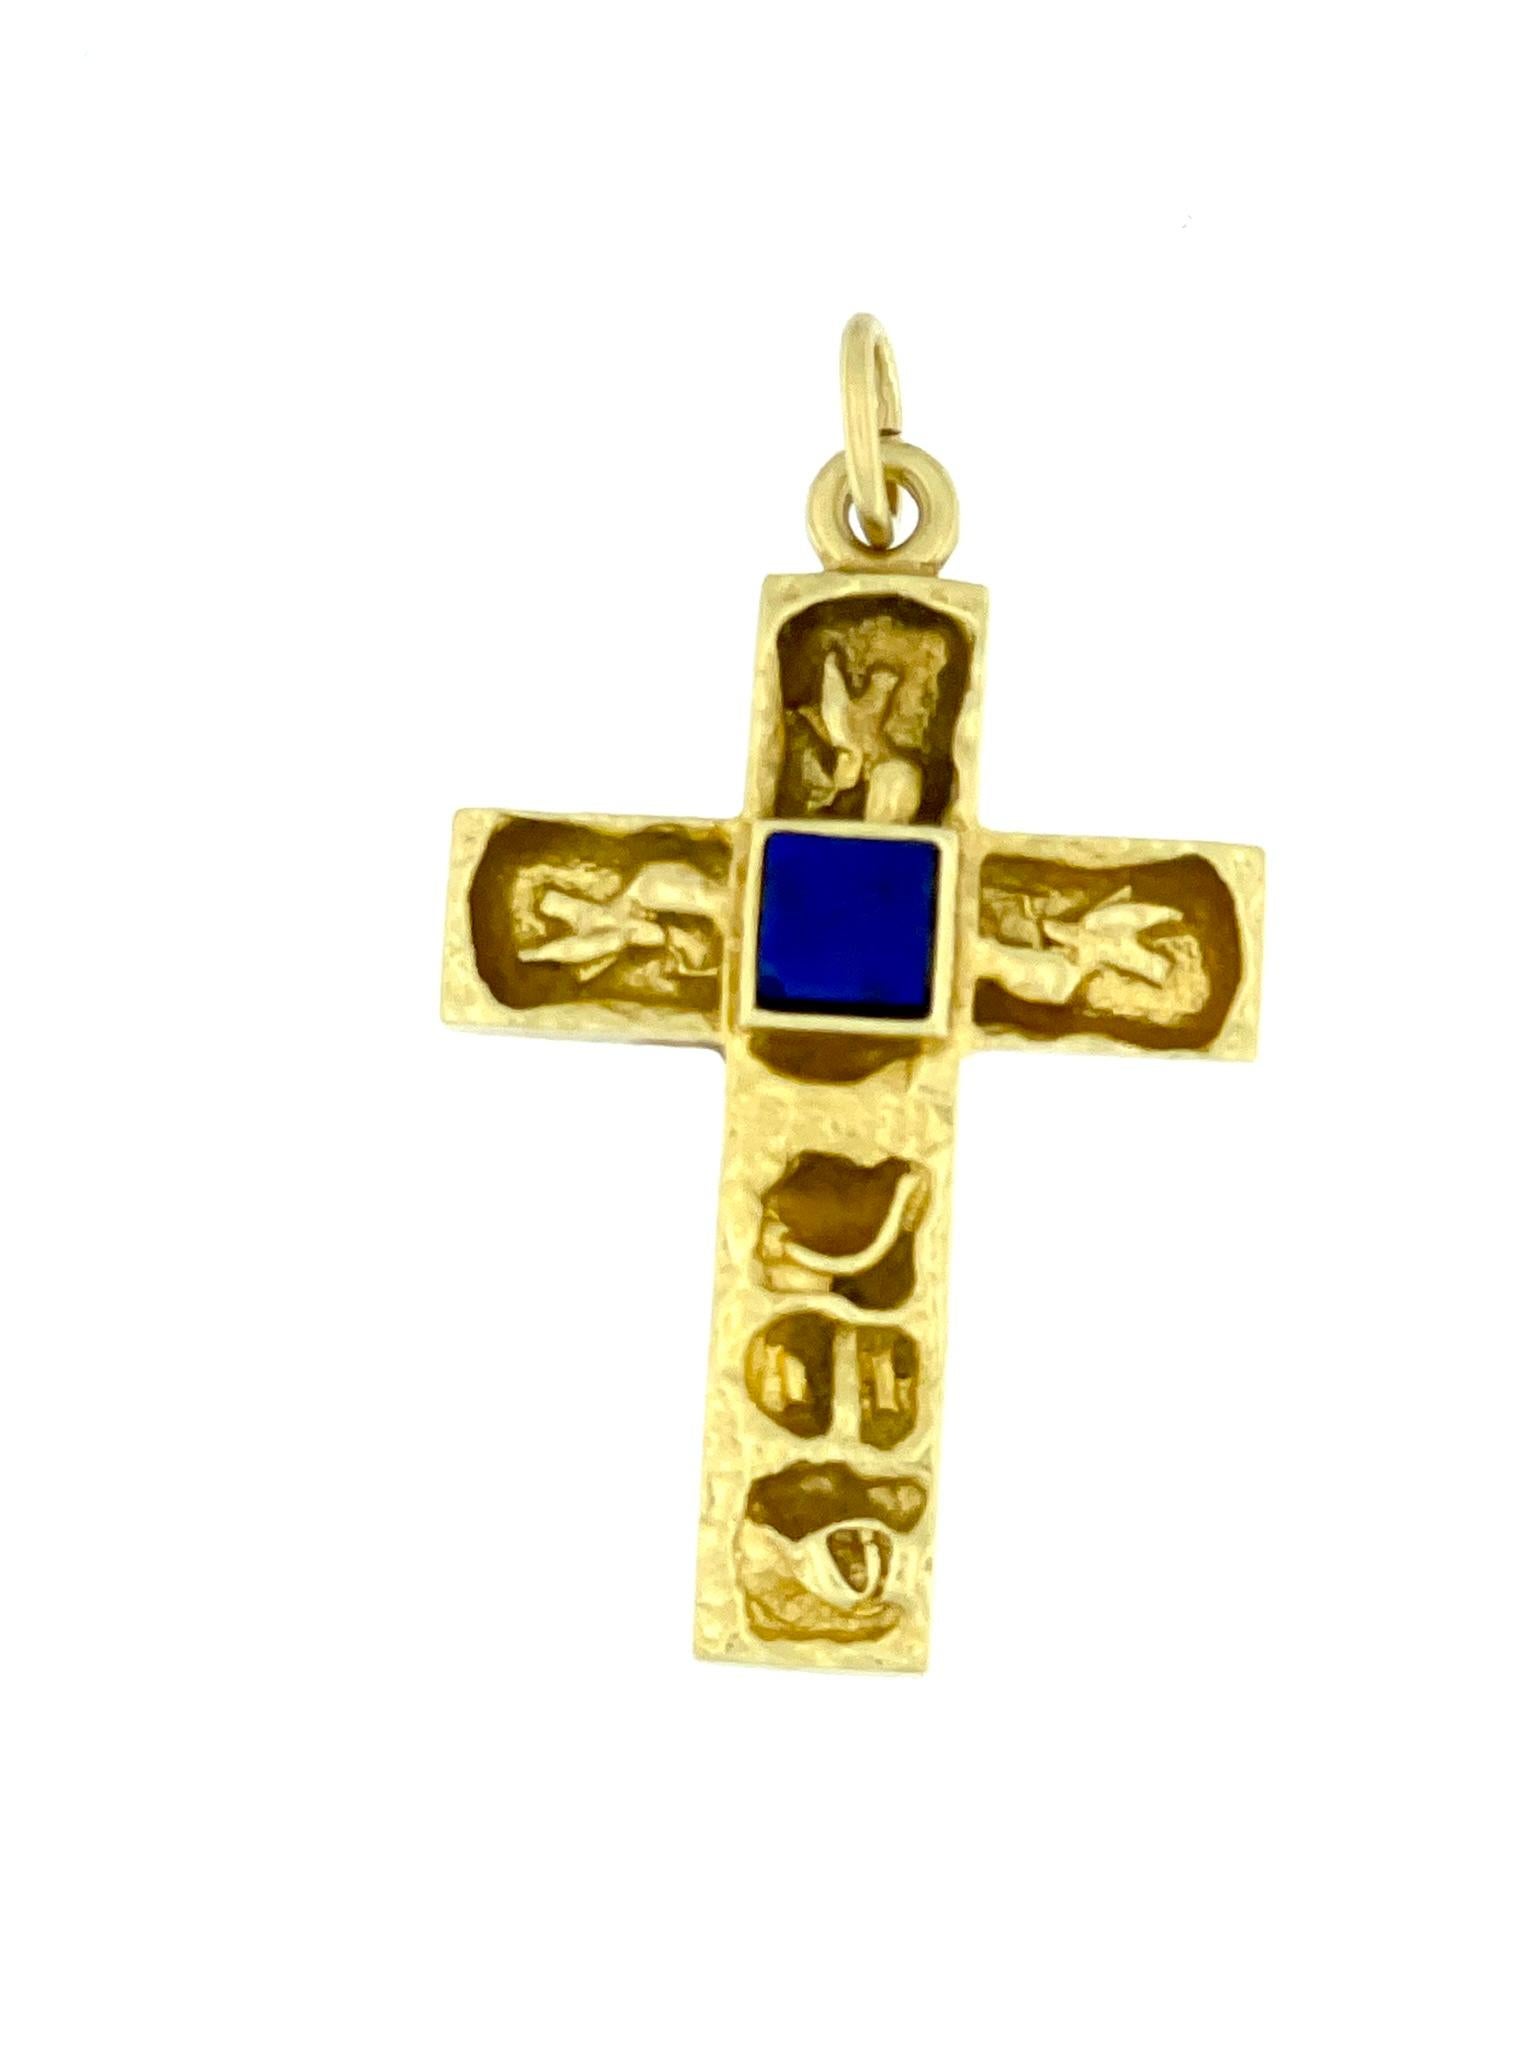 La croix italienne ancienne en or jaune 18 carats avec lapis-lazuli est un bijou intemporel et exquis qui reflète le savoir-faire et l'art du design italien. L'utilisation de l'or jaune 18 carats ajoute une touche de luxe et de chaleur à la croix.